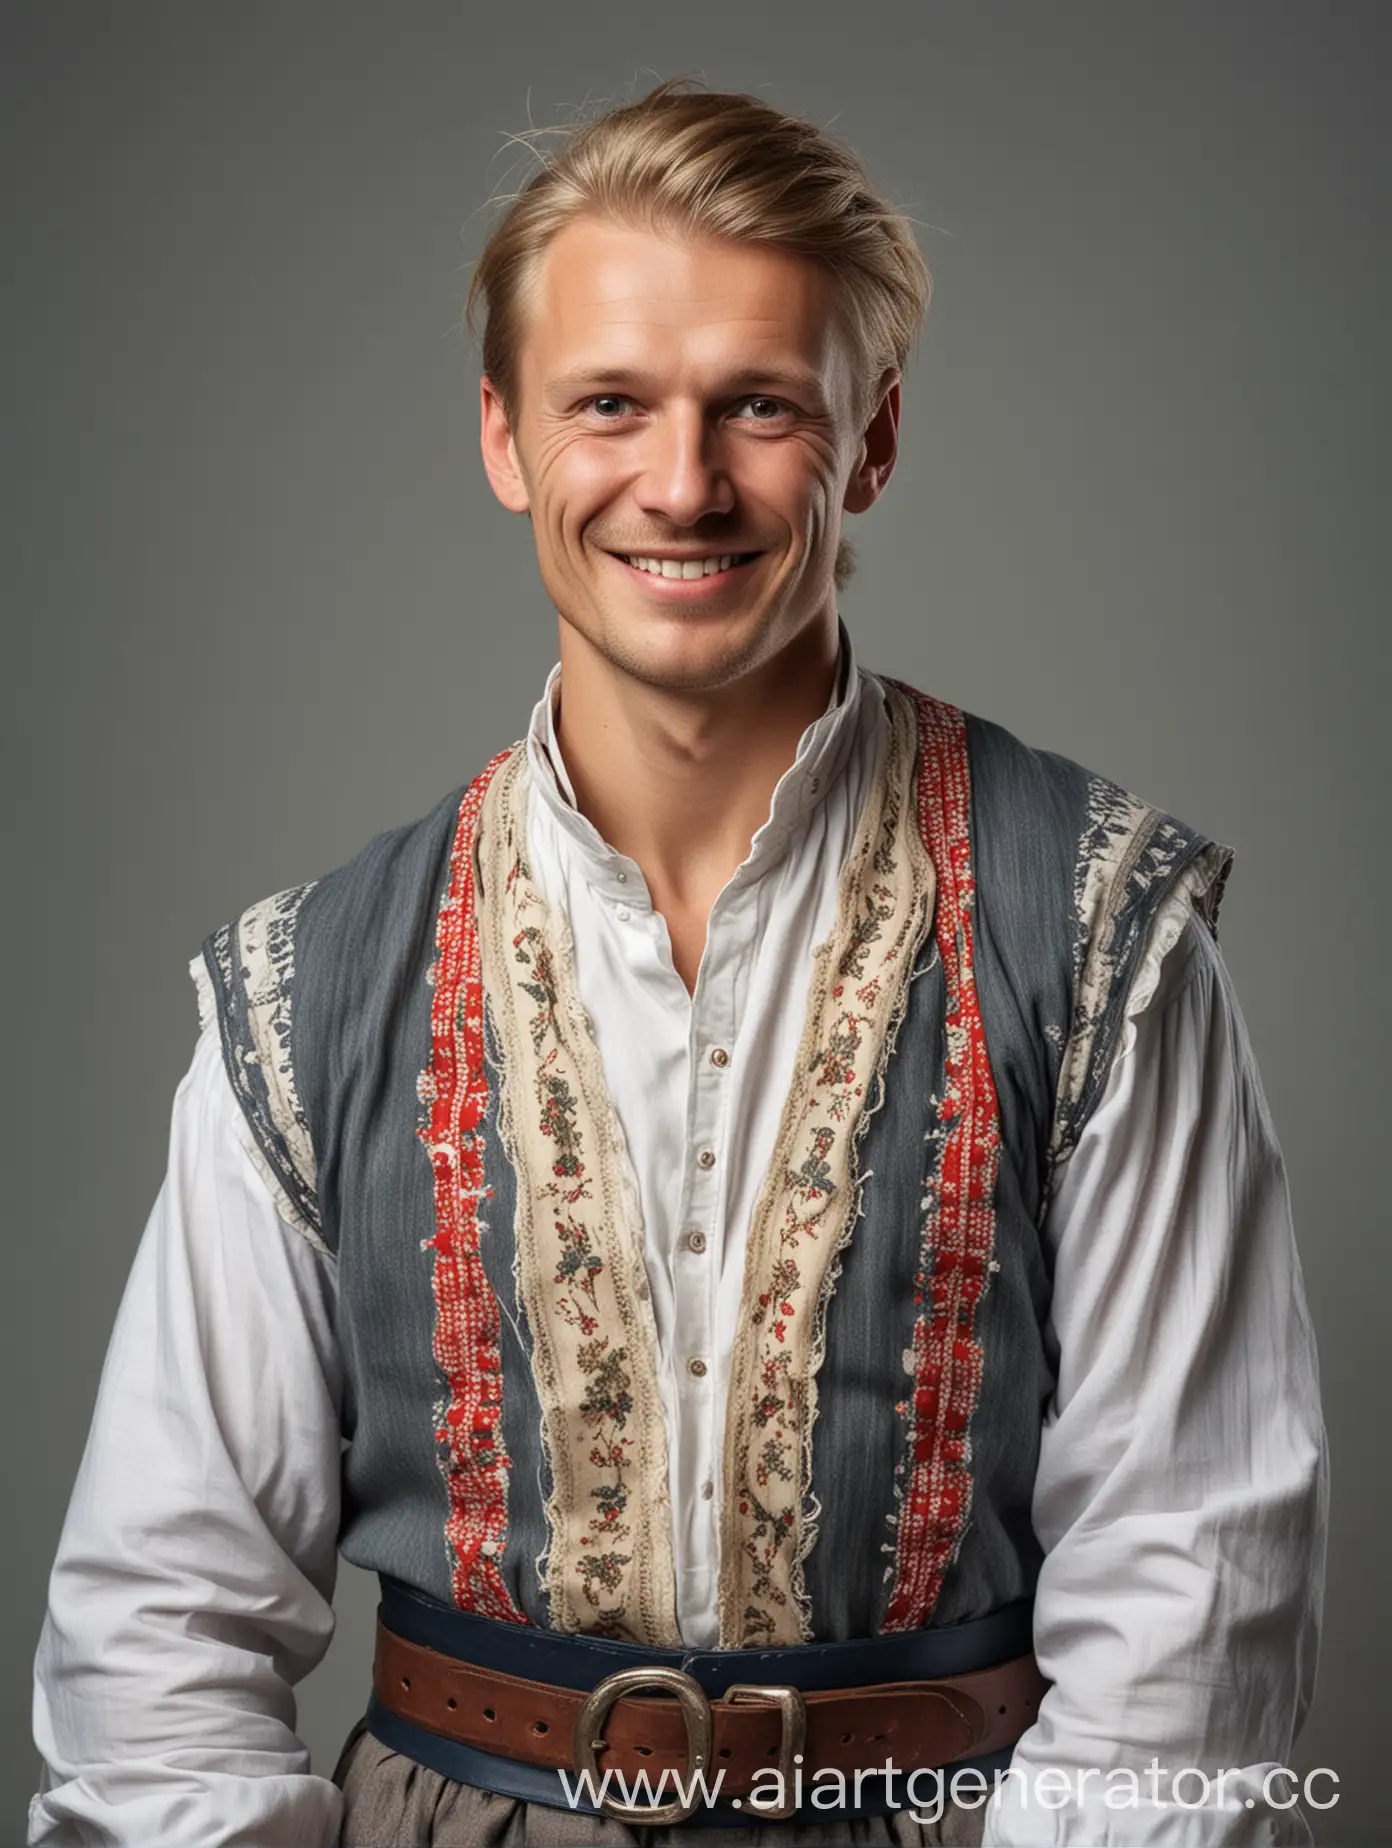 веселый мужчина скандинавской внешности с национальном наряде